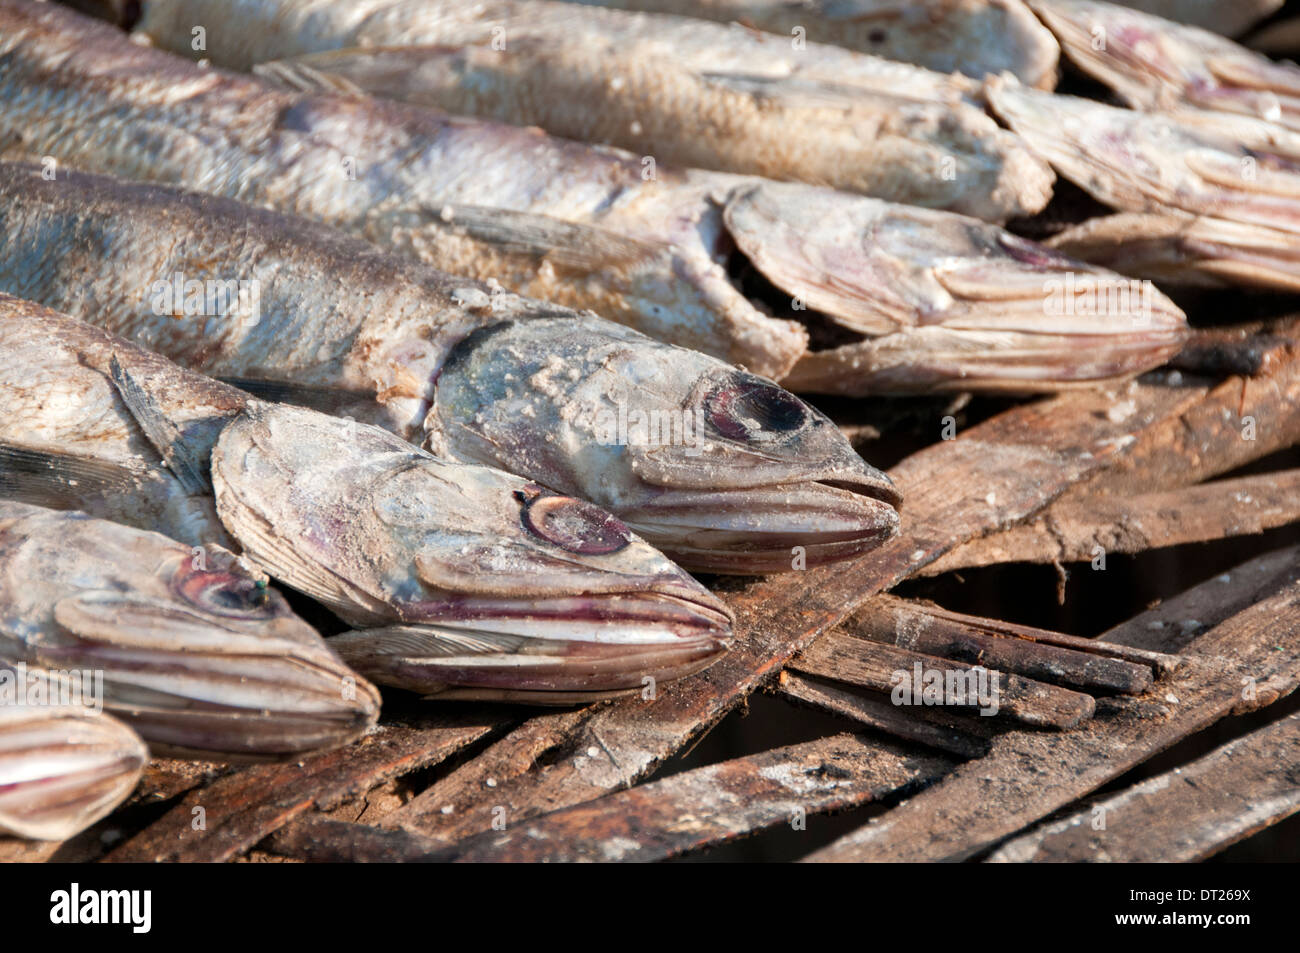 Le poisson séché prêt pour fumeurs, village de pêcheurs de Tanji, Gambie, Afrique de l'Ouest Banque D'Images